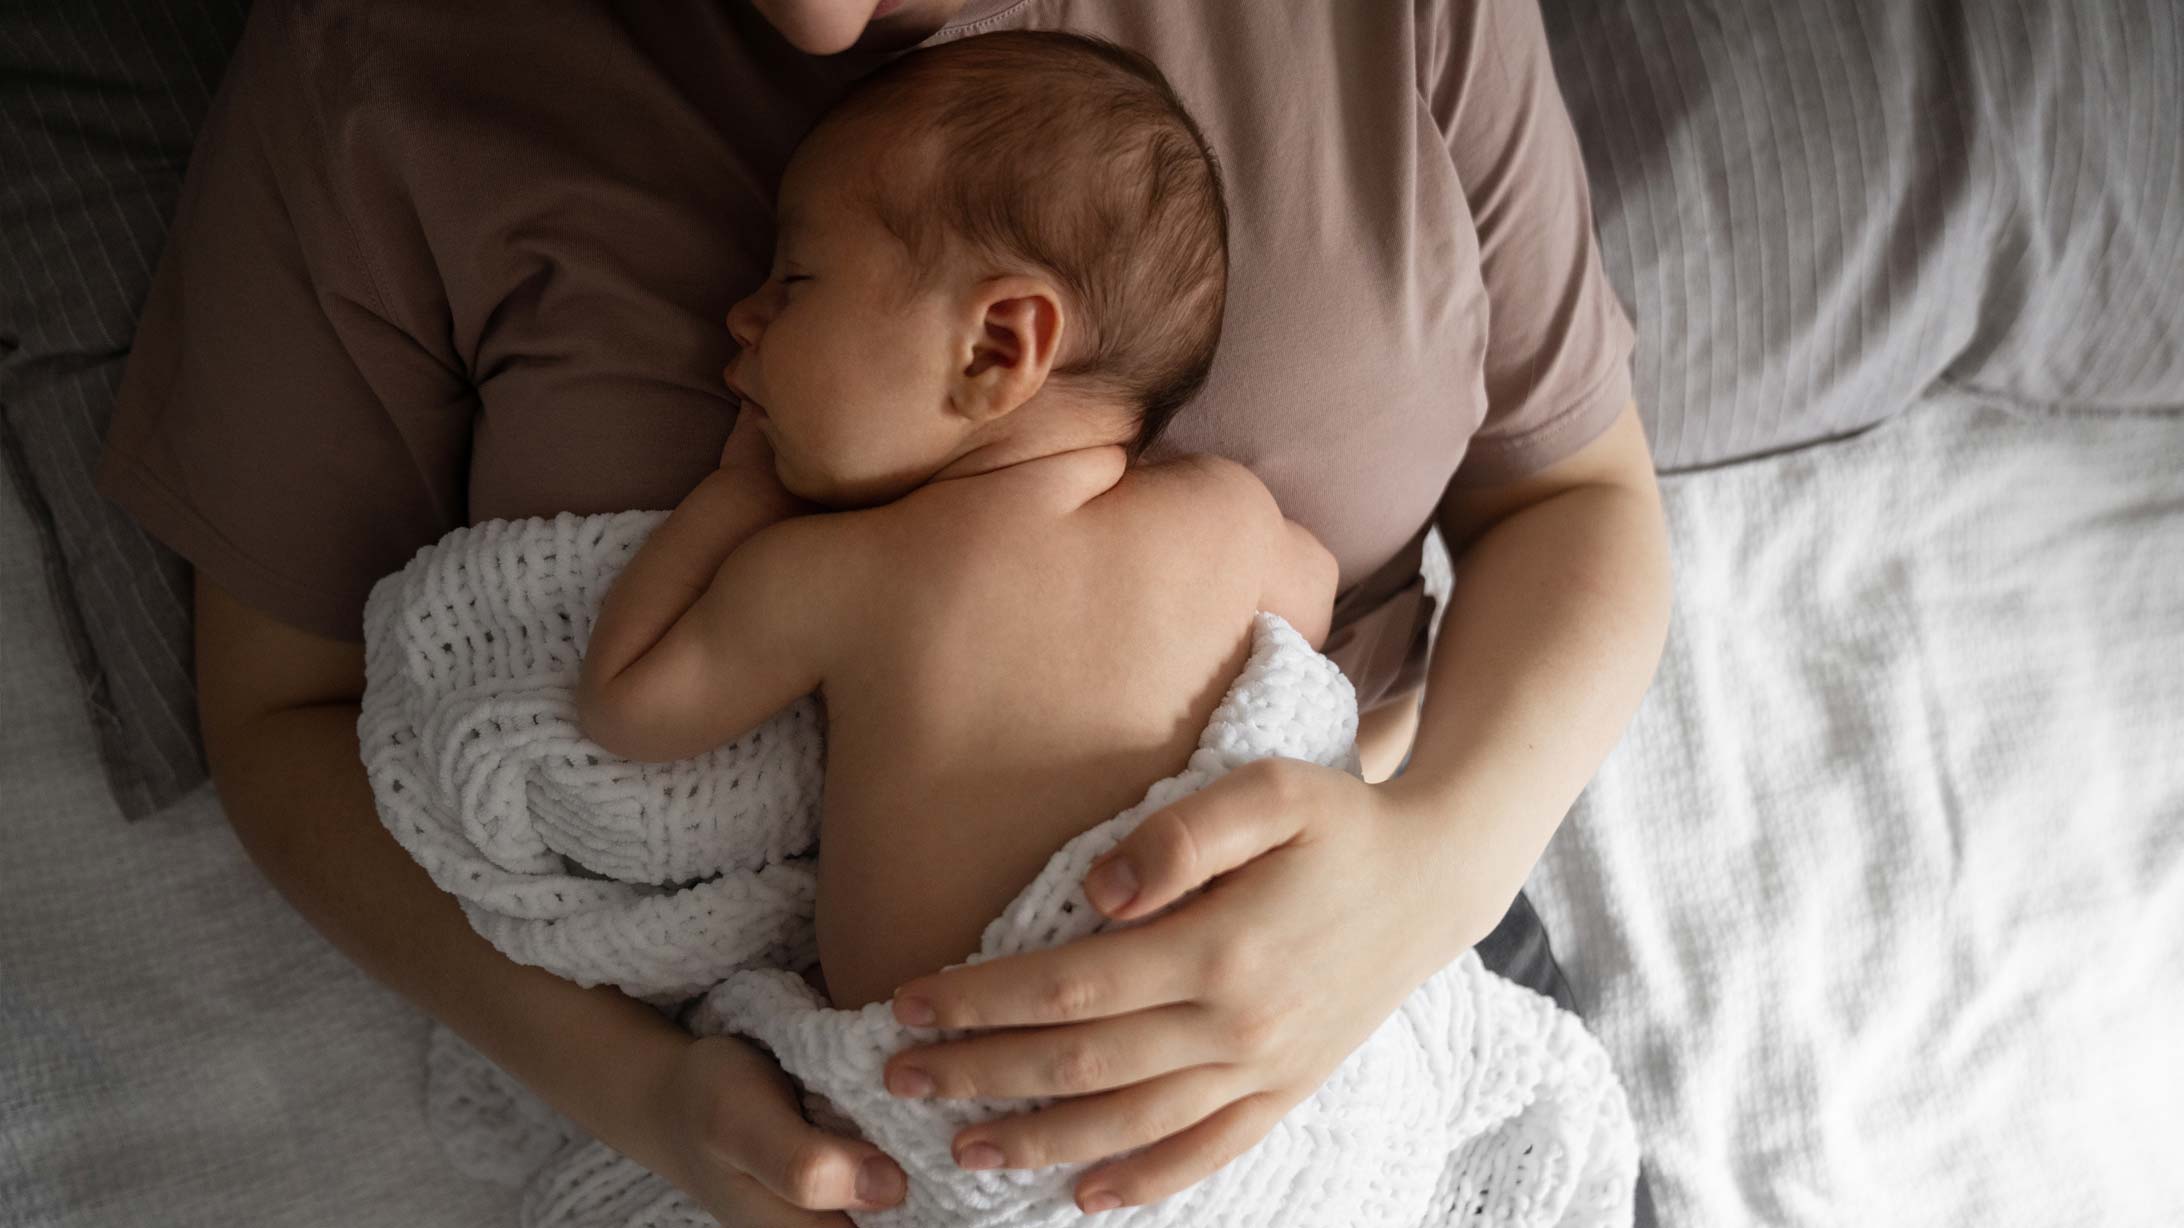 Geburt nach Schlauchmagen-OP: Eine Mutter hält ihr neugeborenes Baby in den Armen